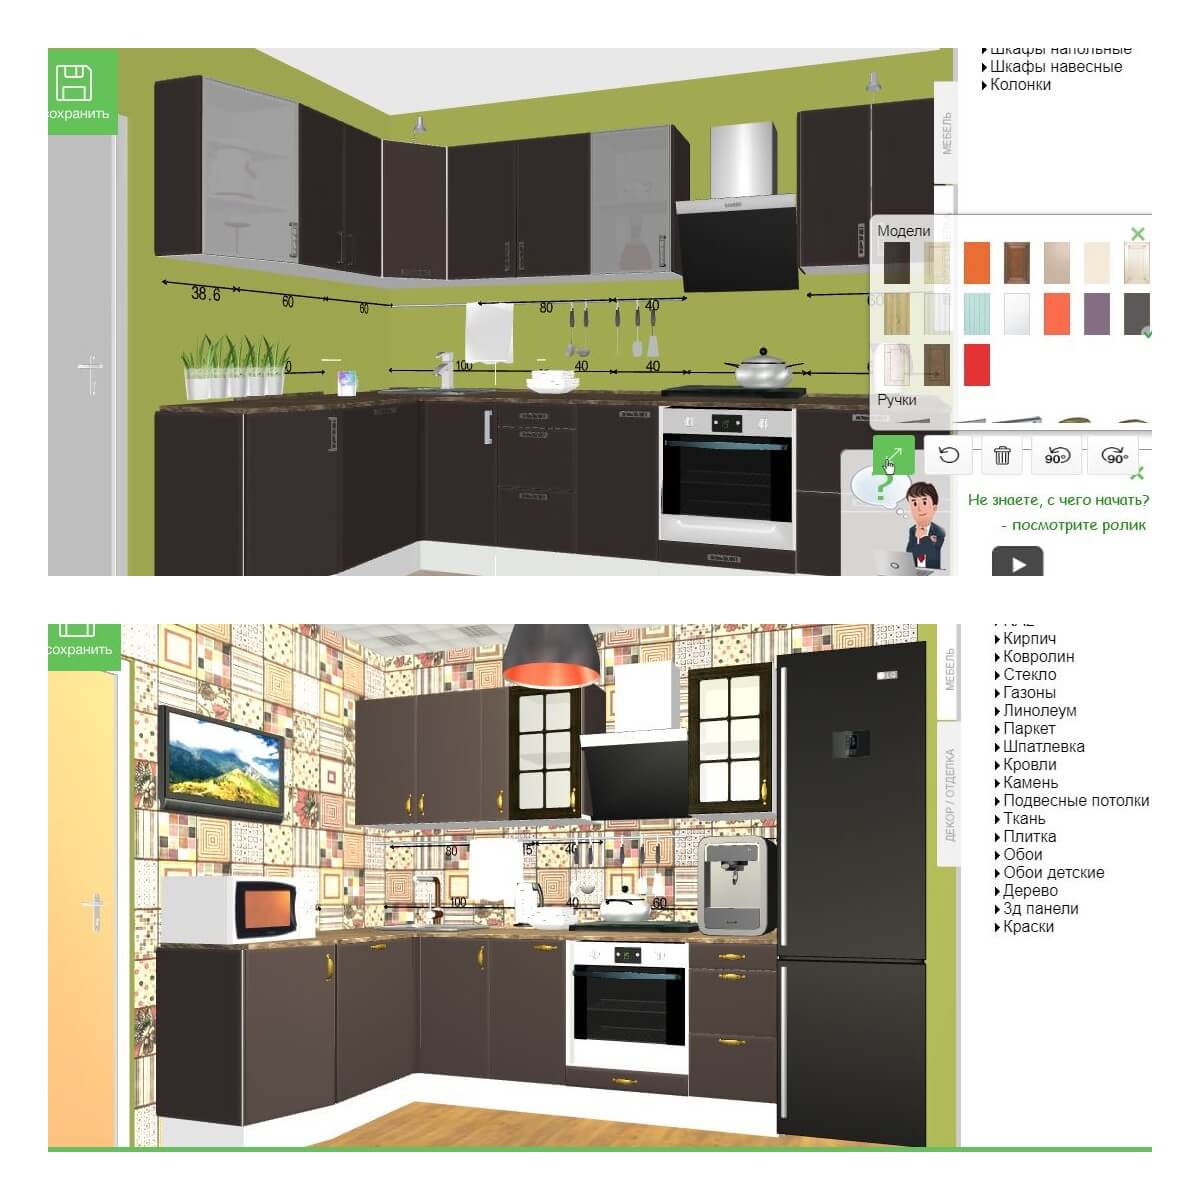 Кухни в леруа мерлен: каталог 2022 года, отзывы и фото модульных, а так же готовых решений с красивым дизайном фасада (140 фото)